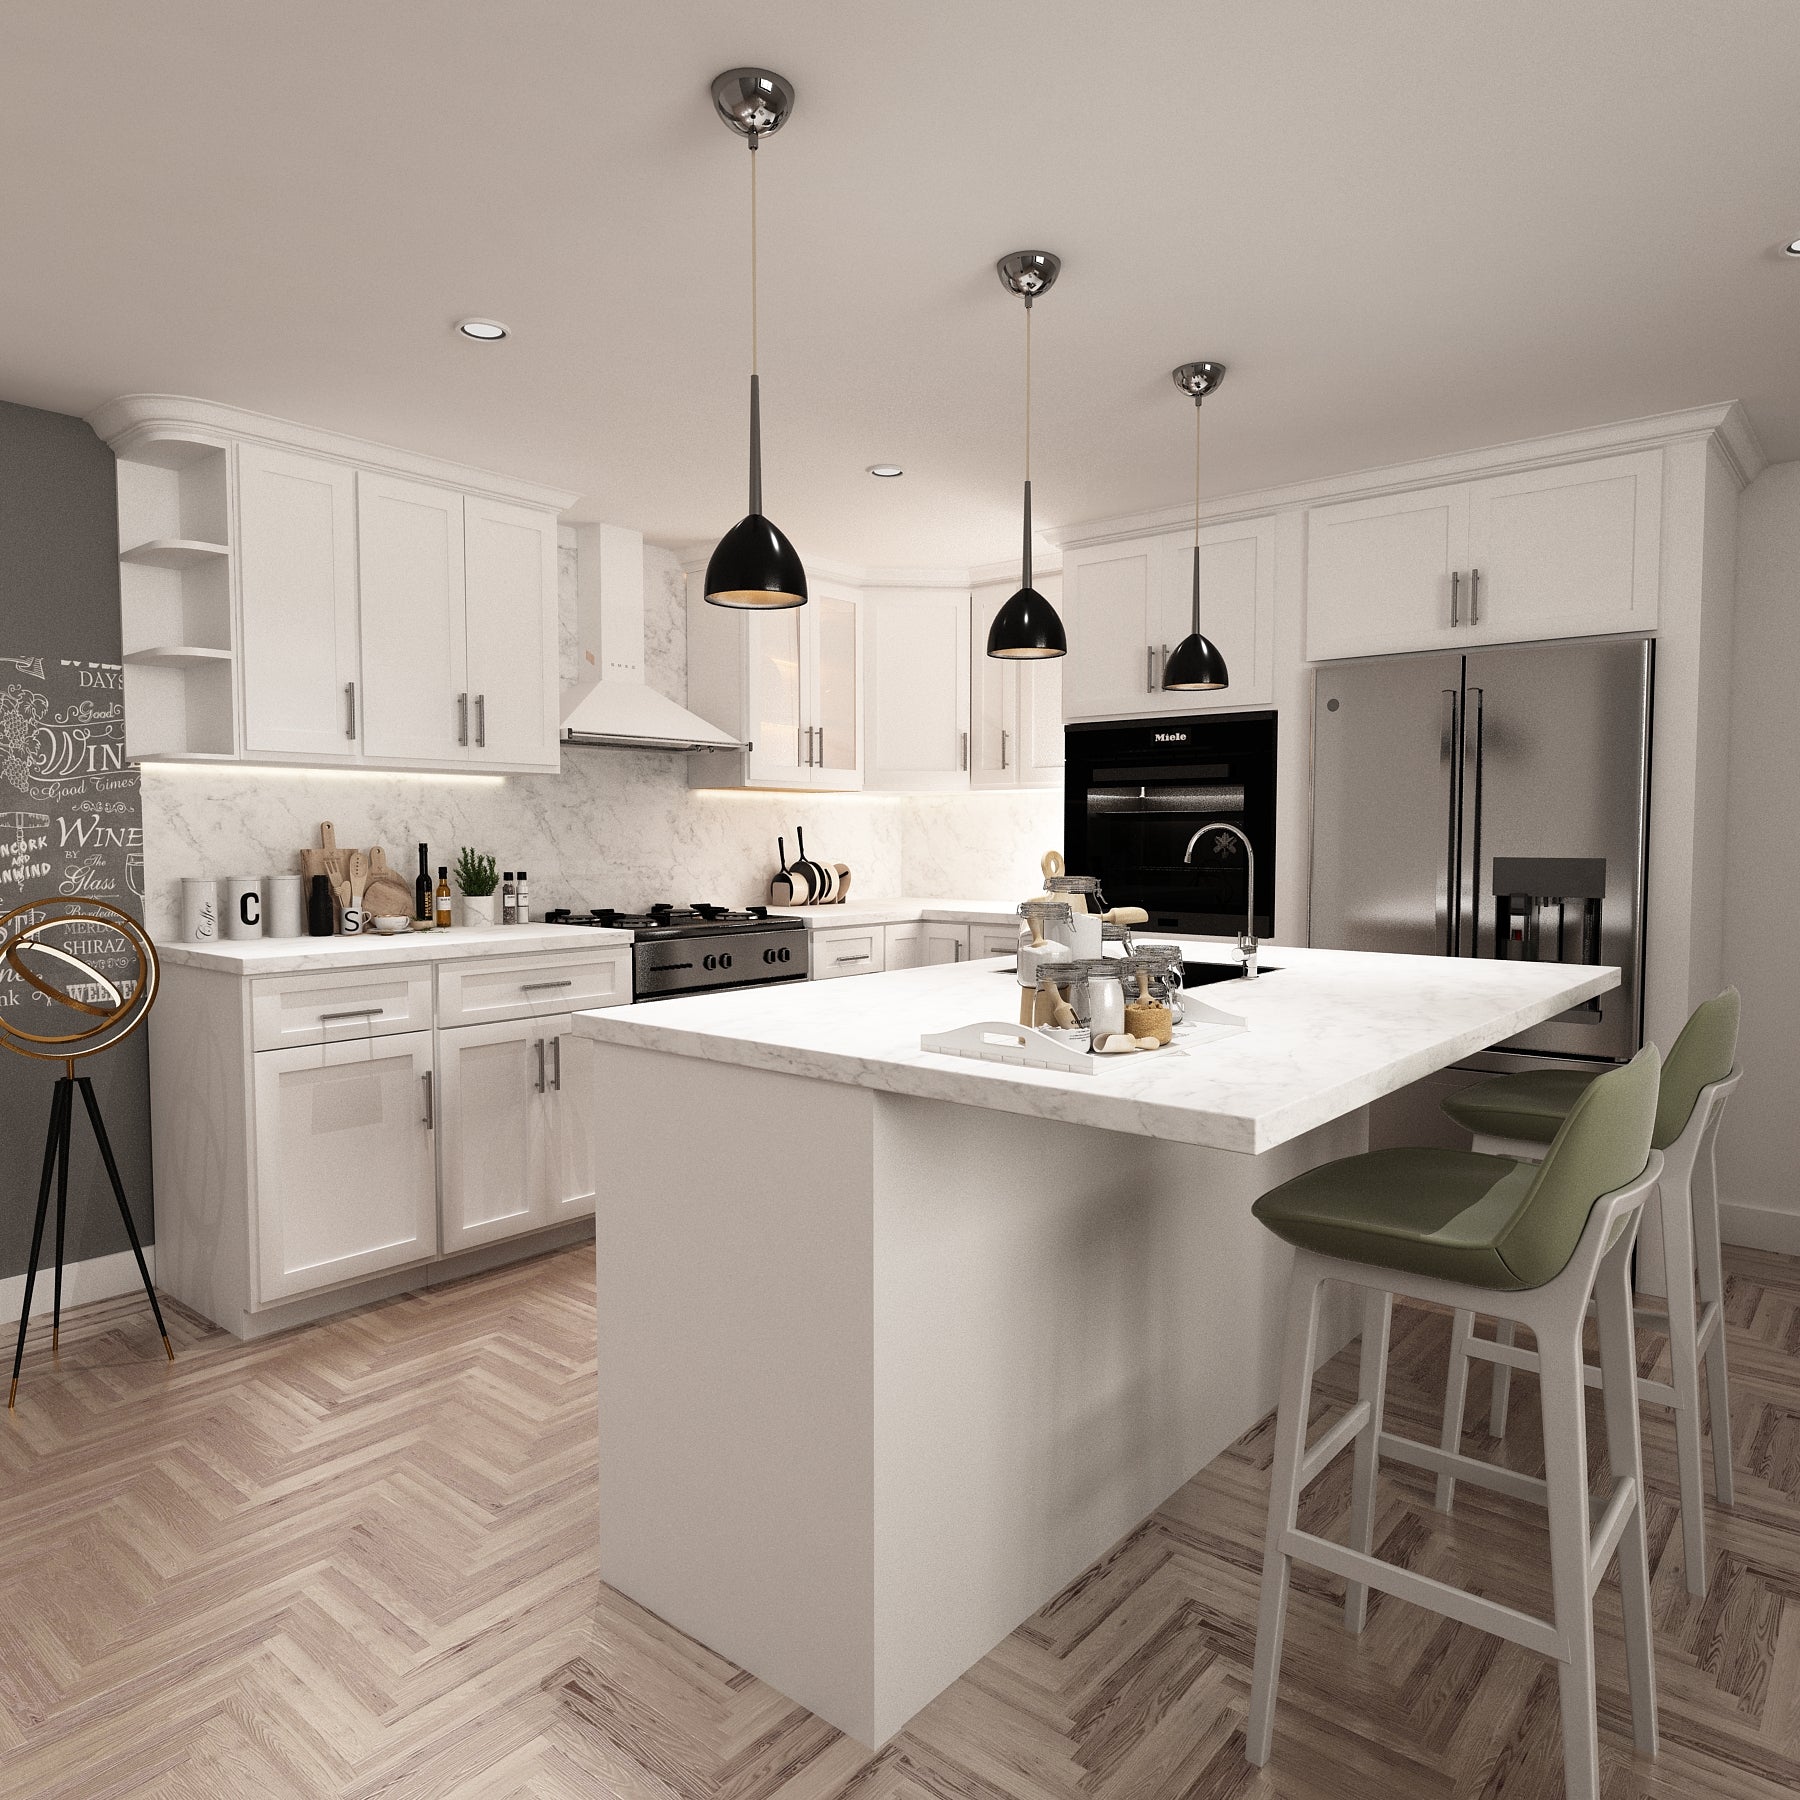 10x10 Kitchen Layout Design Aria